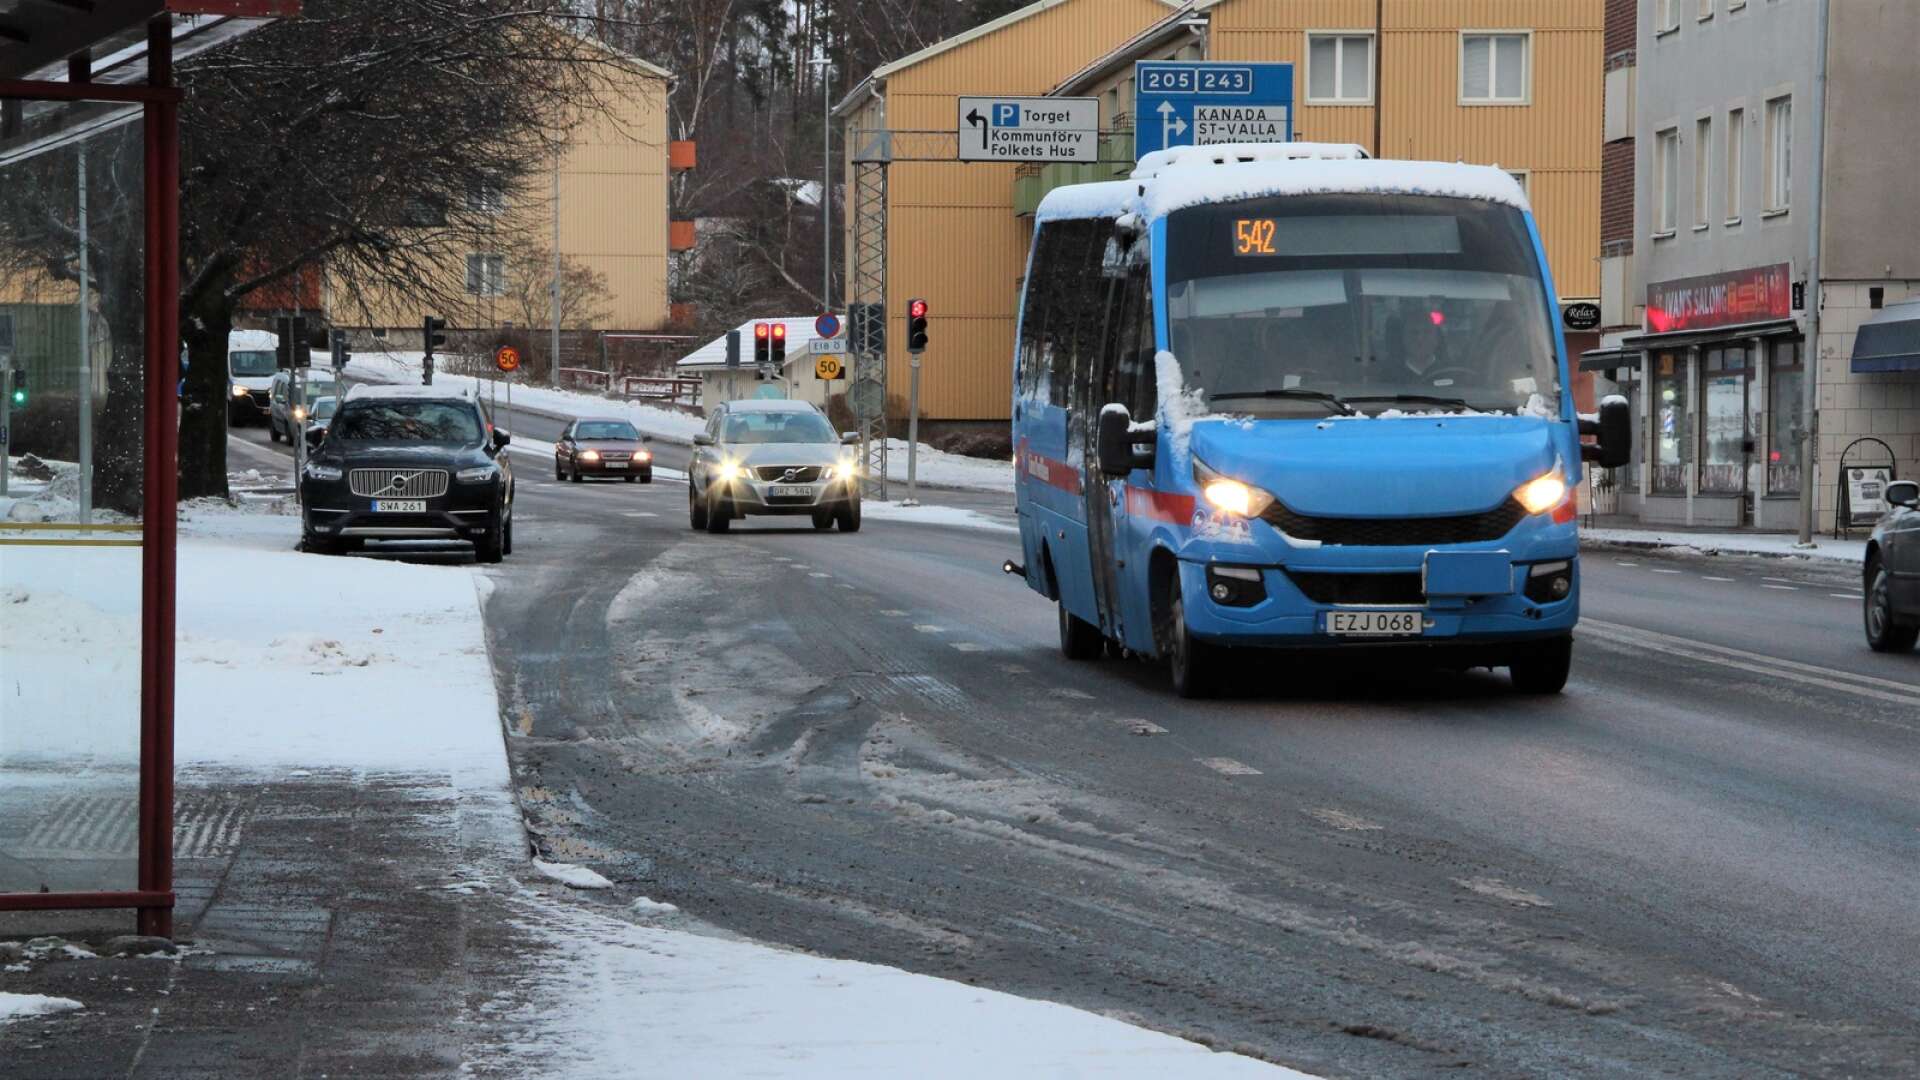 Linje 542, Svartå-Åtorp-Degerfors, ska läggas ned i augusti och nu tittar man på lösningar i kommunen, där allmänheten som bor längs busslinjen får tycka till.